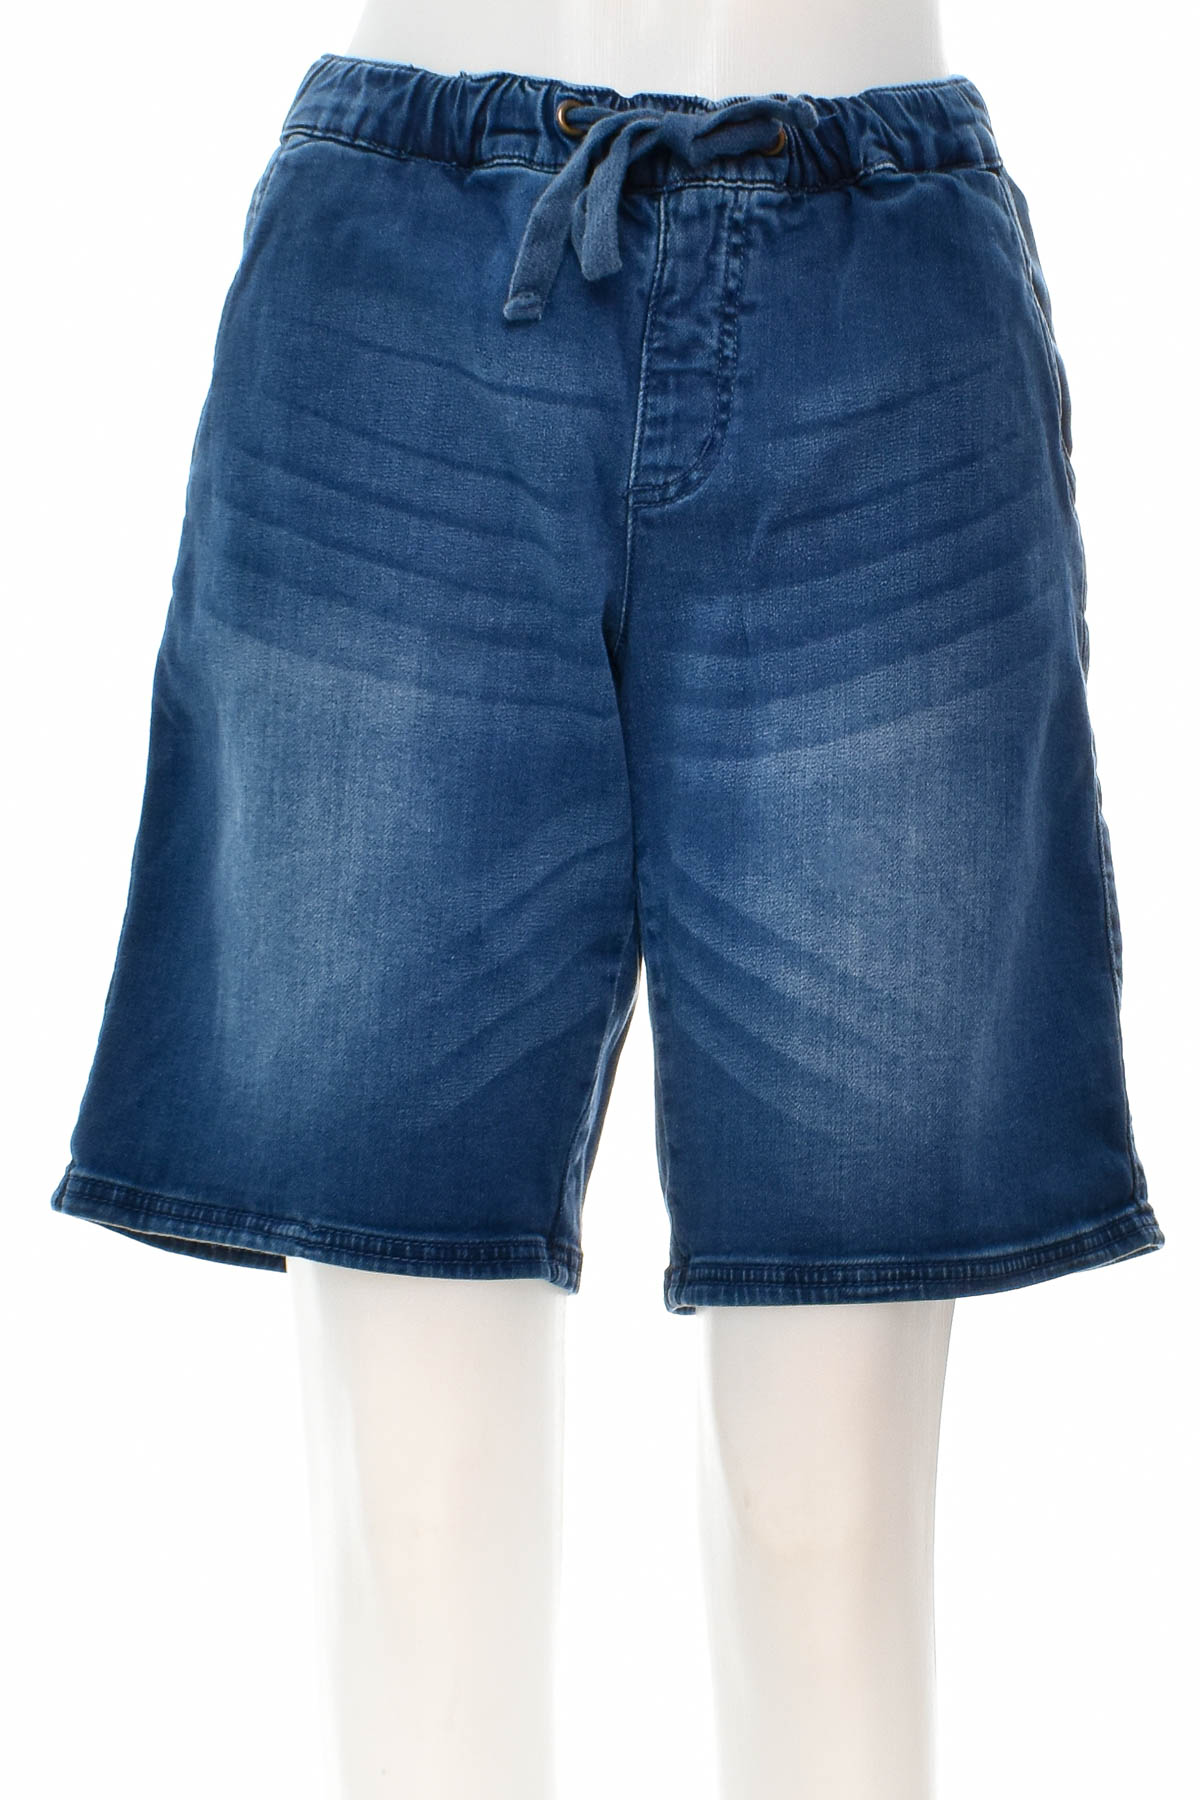 Female shorts - John Baner - 0